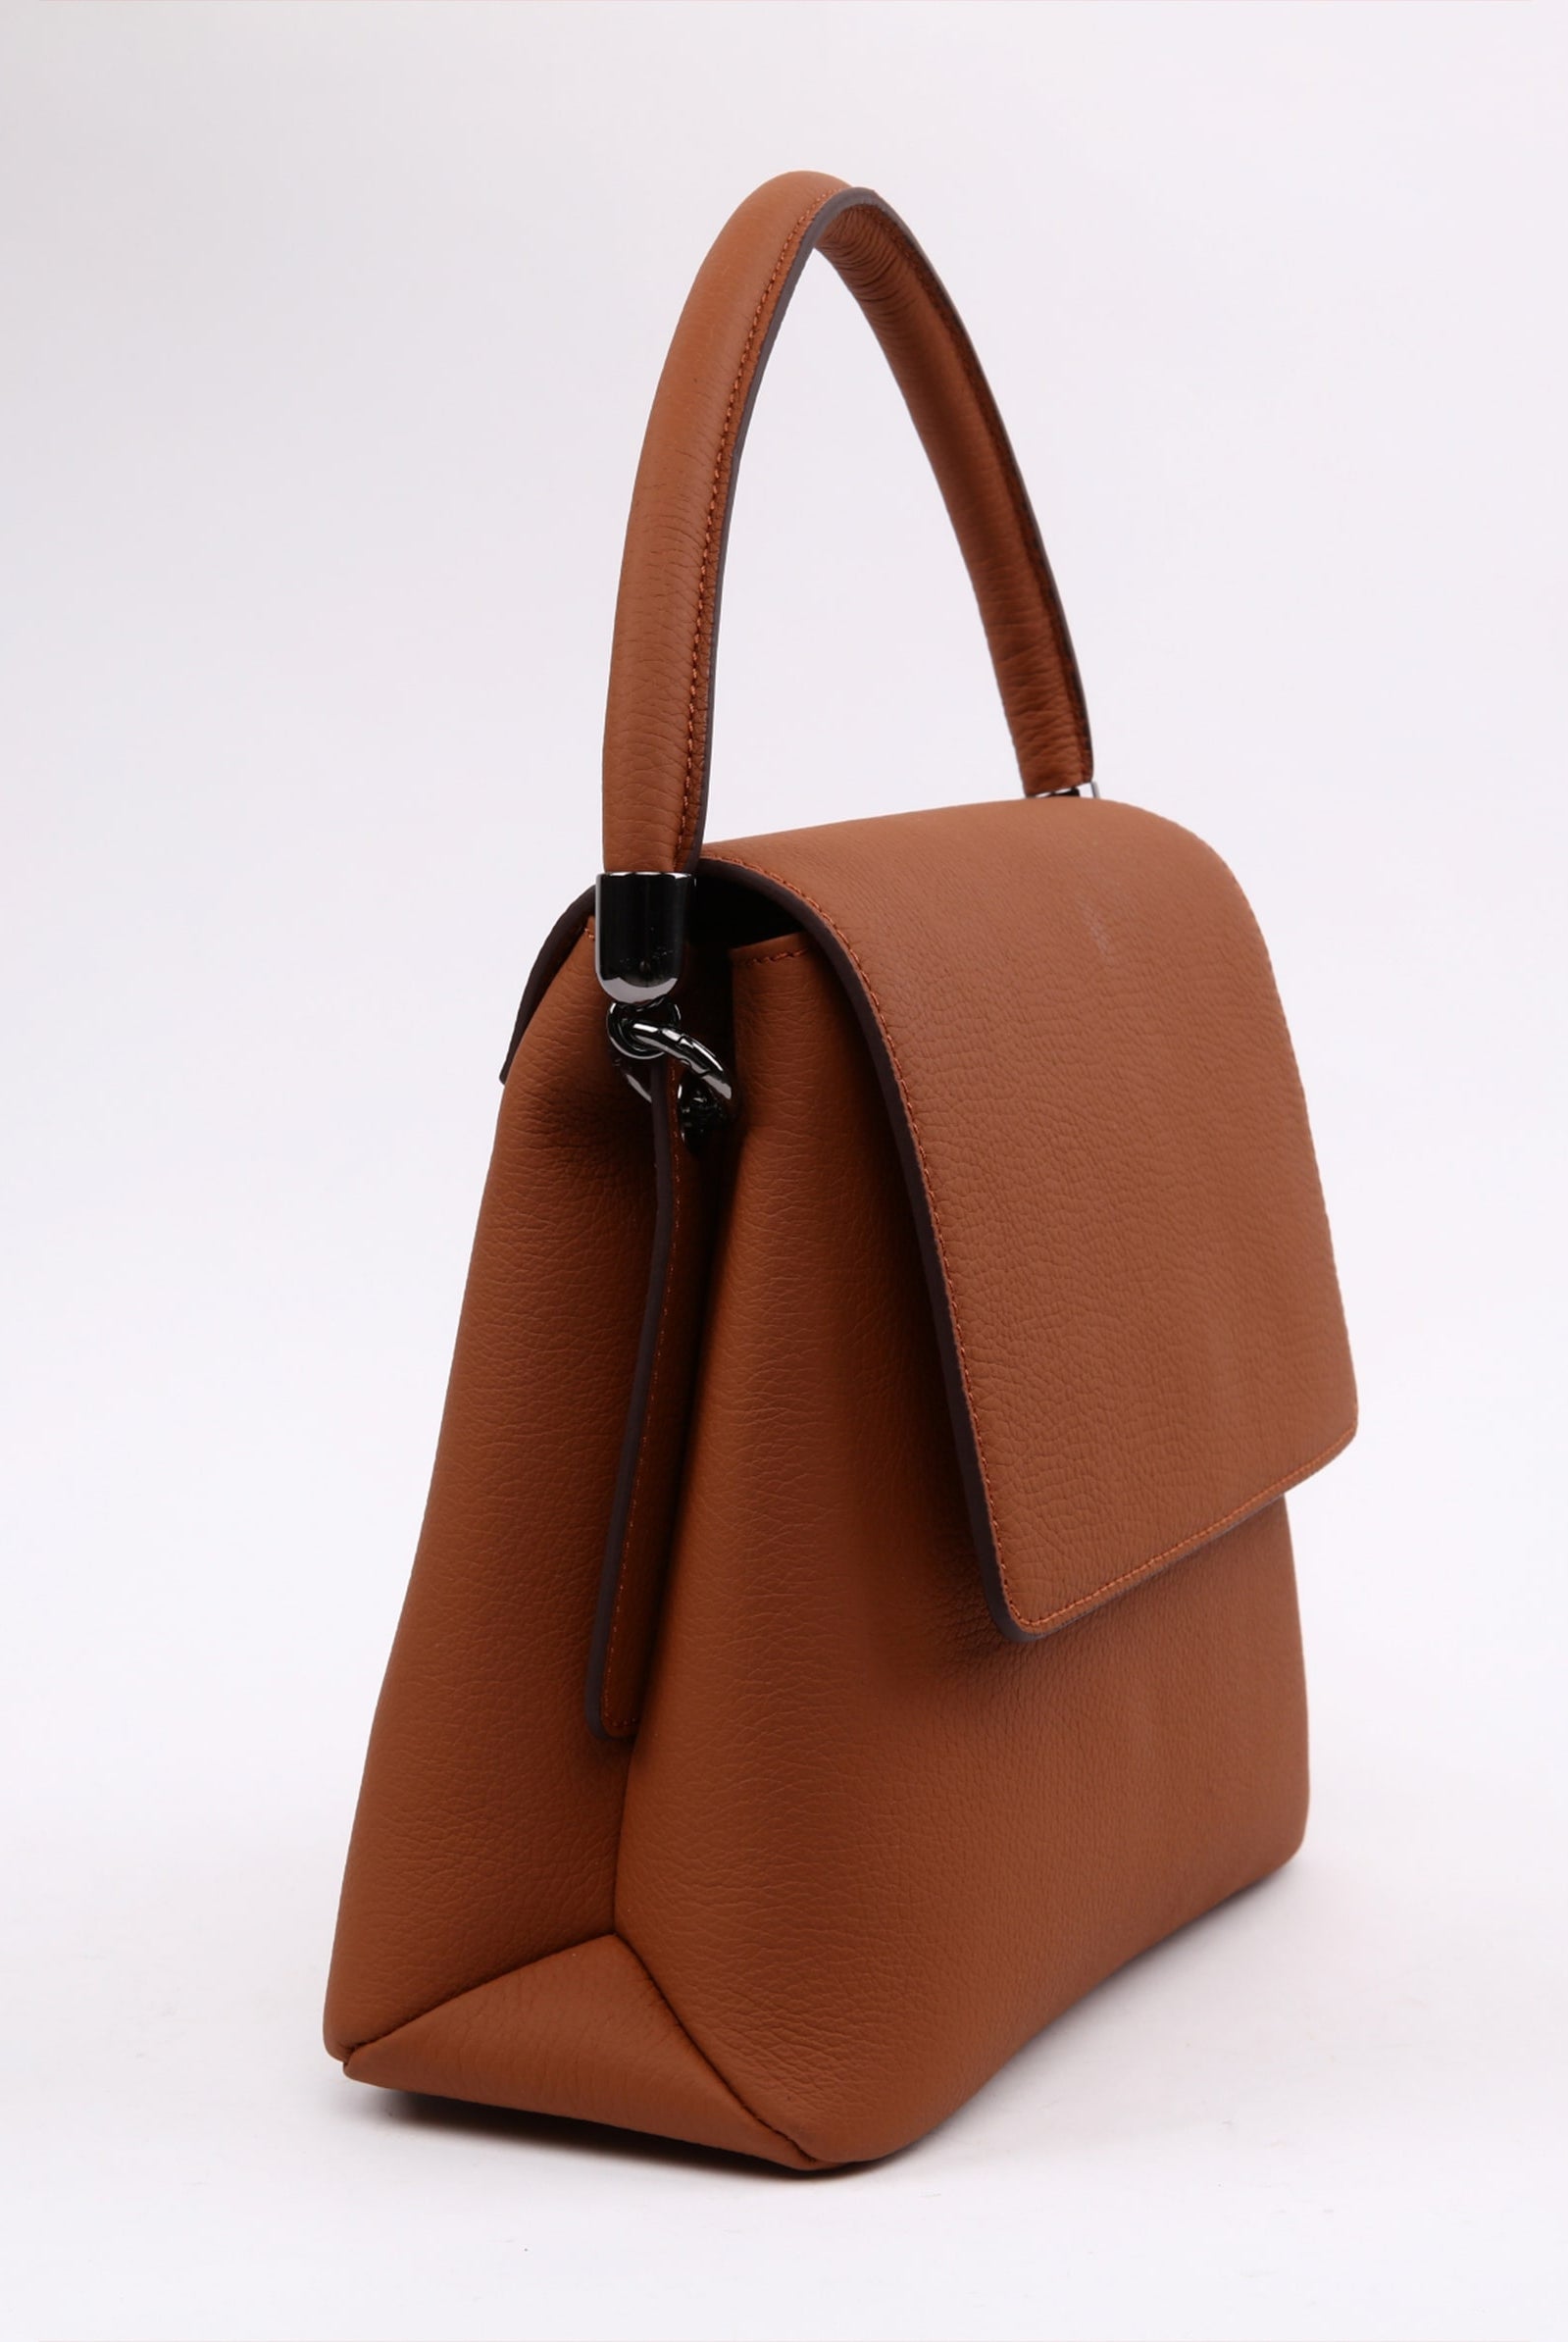 chocolate brown handbag